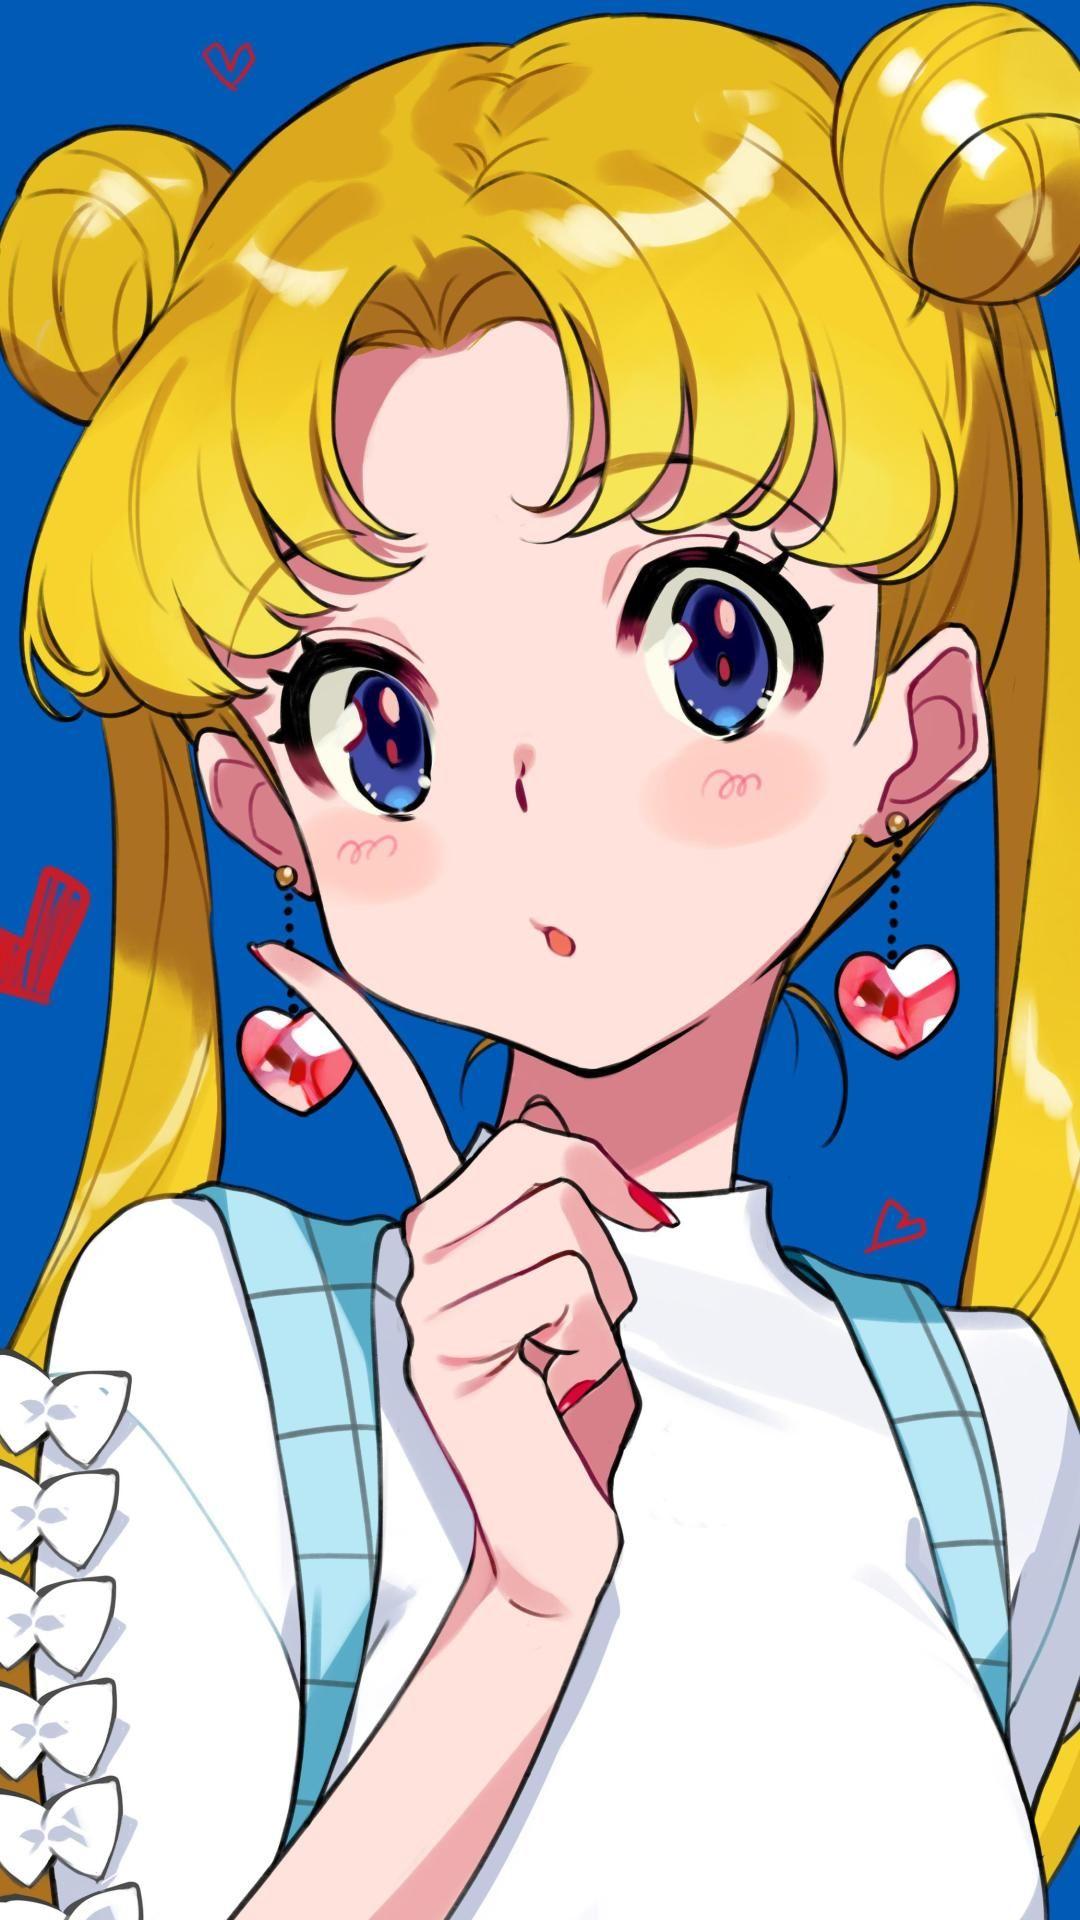 1080 x 1920 · jpeg - Sailor Moon Usagi Tsukano[Sailor Moon] (2250x4000) | Anime, Anime ...